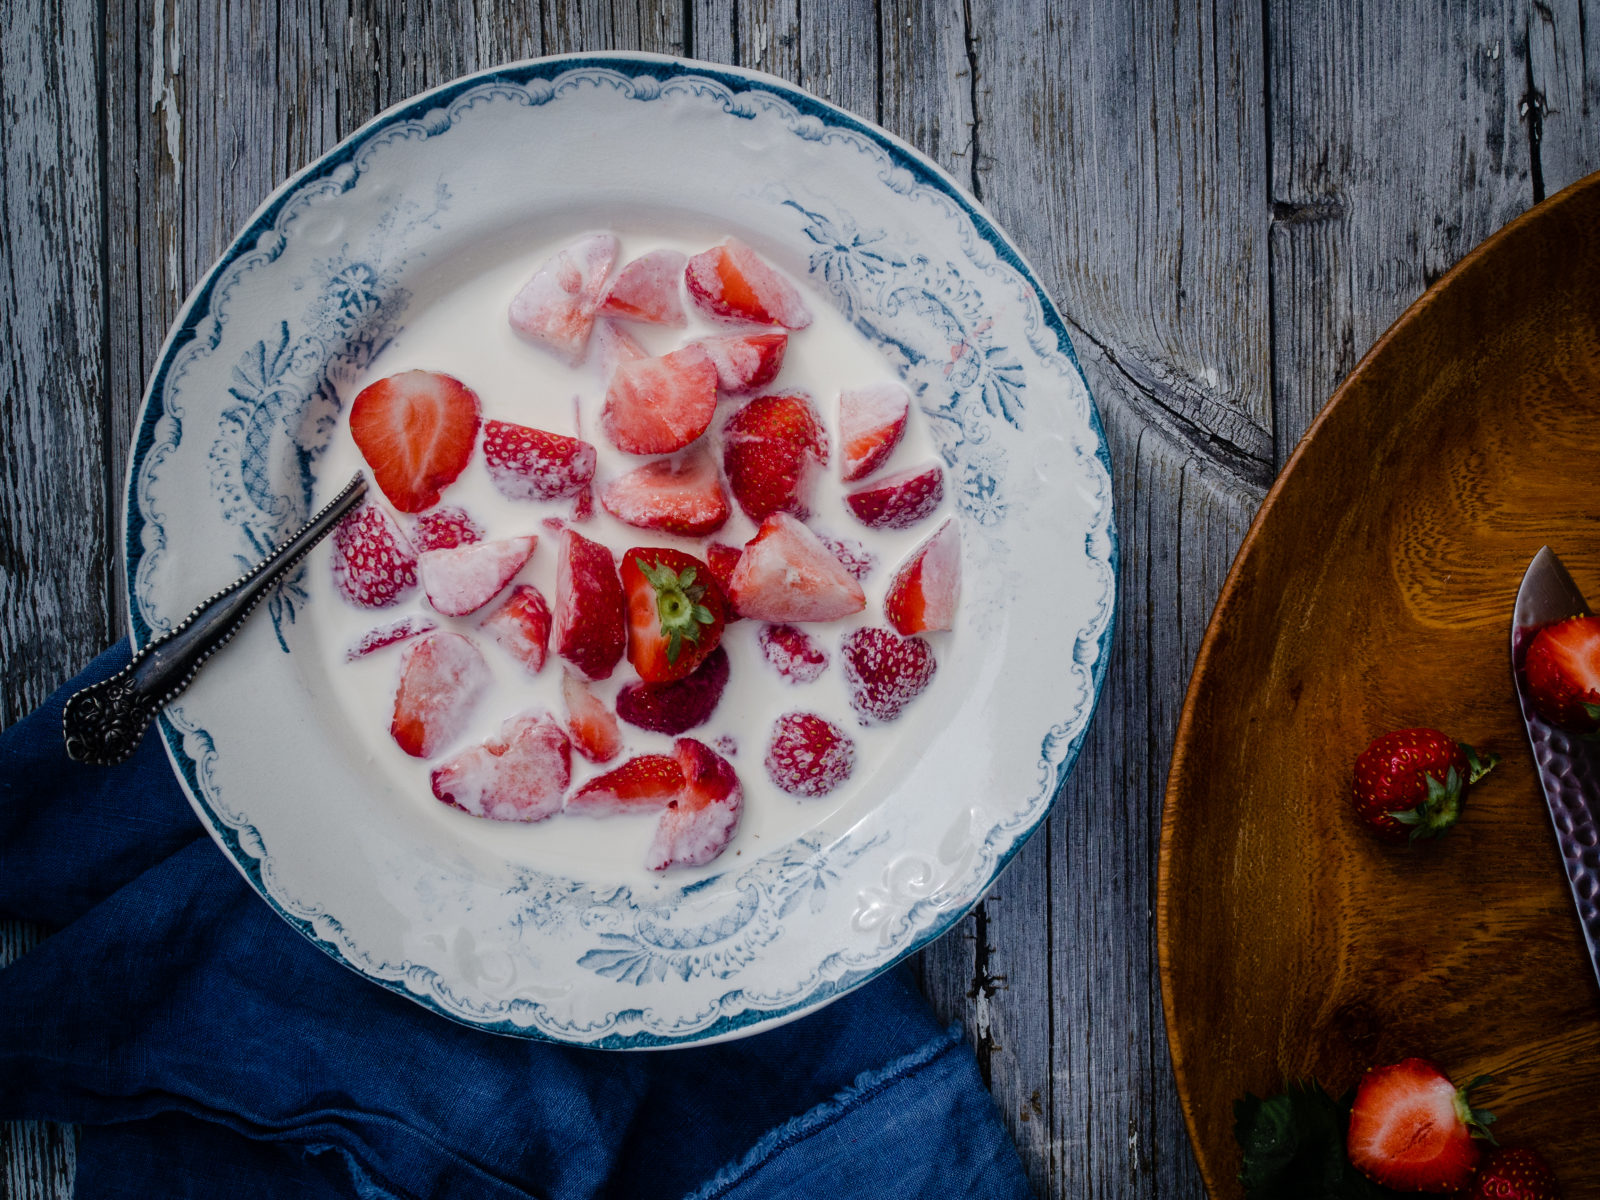 Summer Strawberries and Cream (Jordbær med fløte)